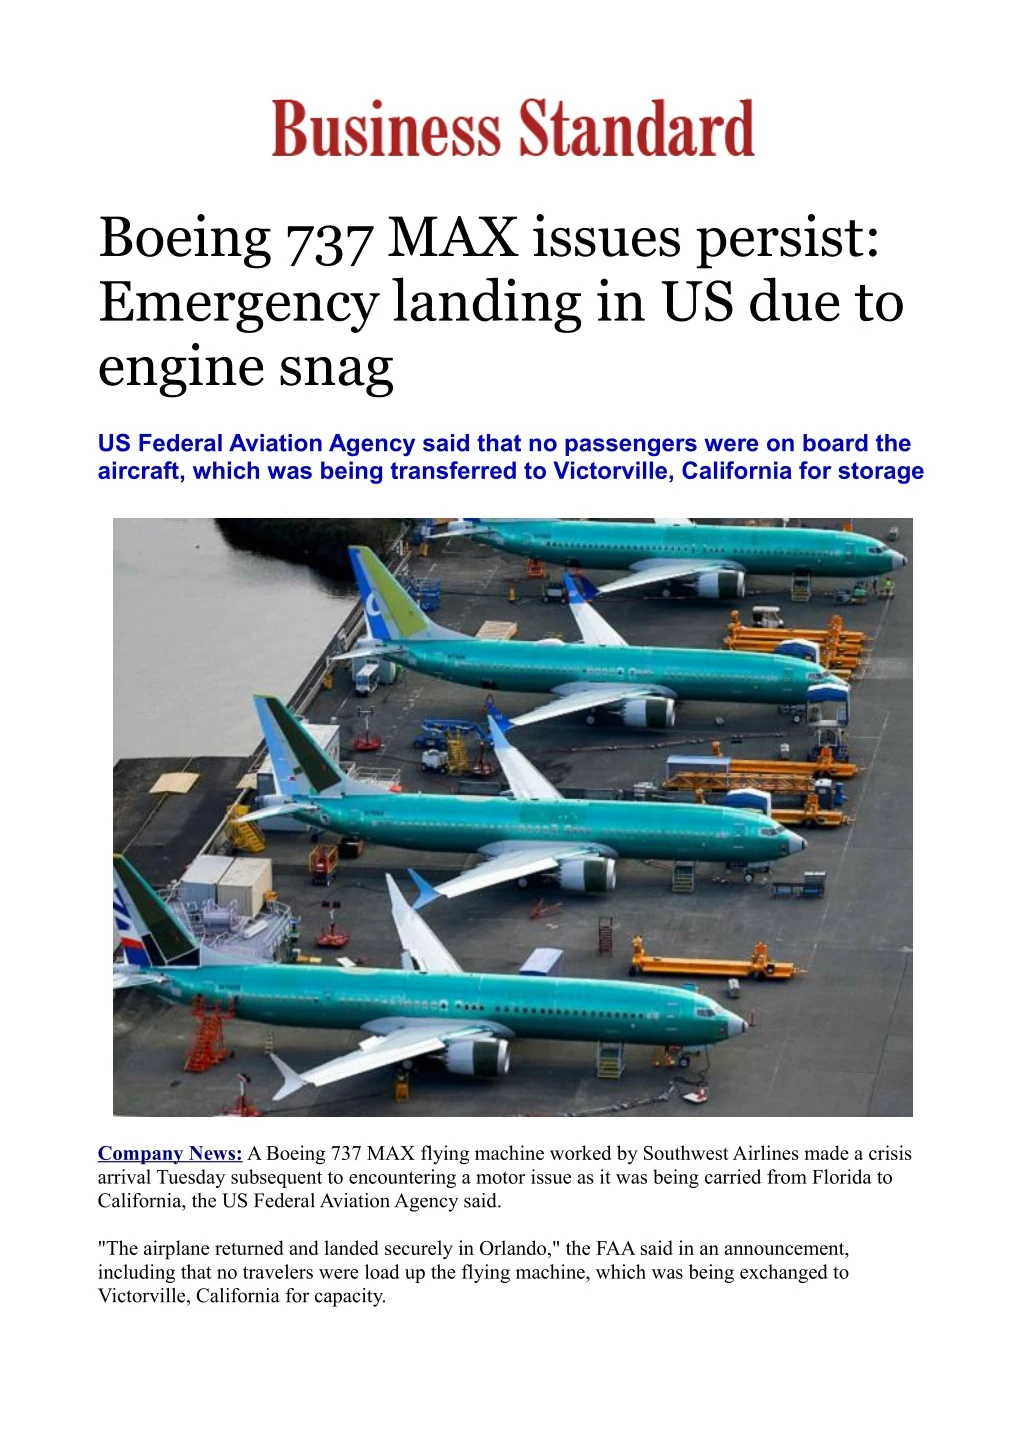 boeing 737 max issues persist emergency landing